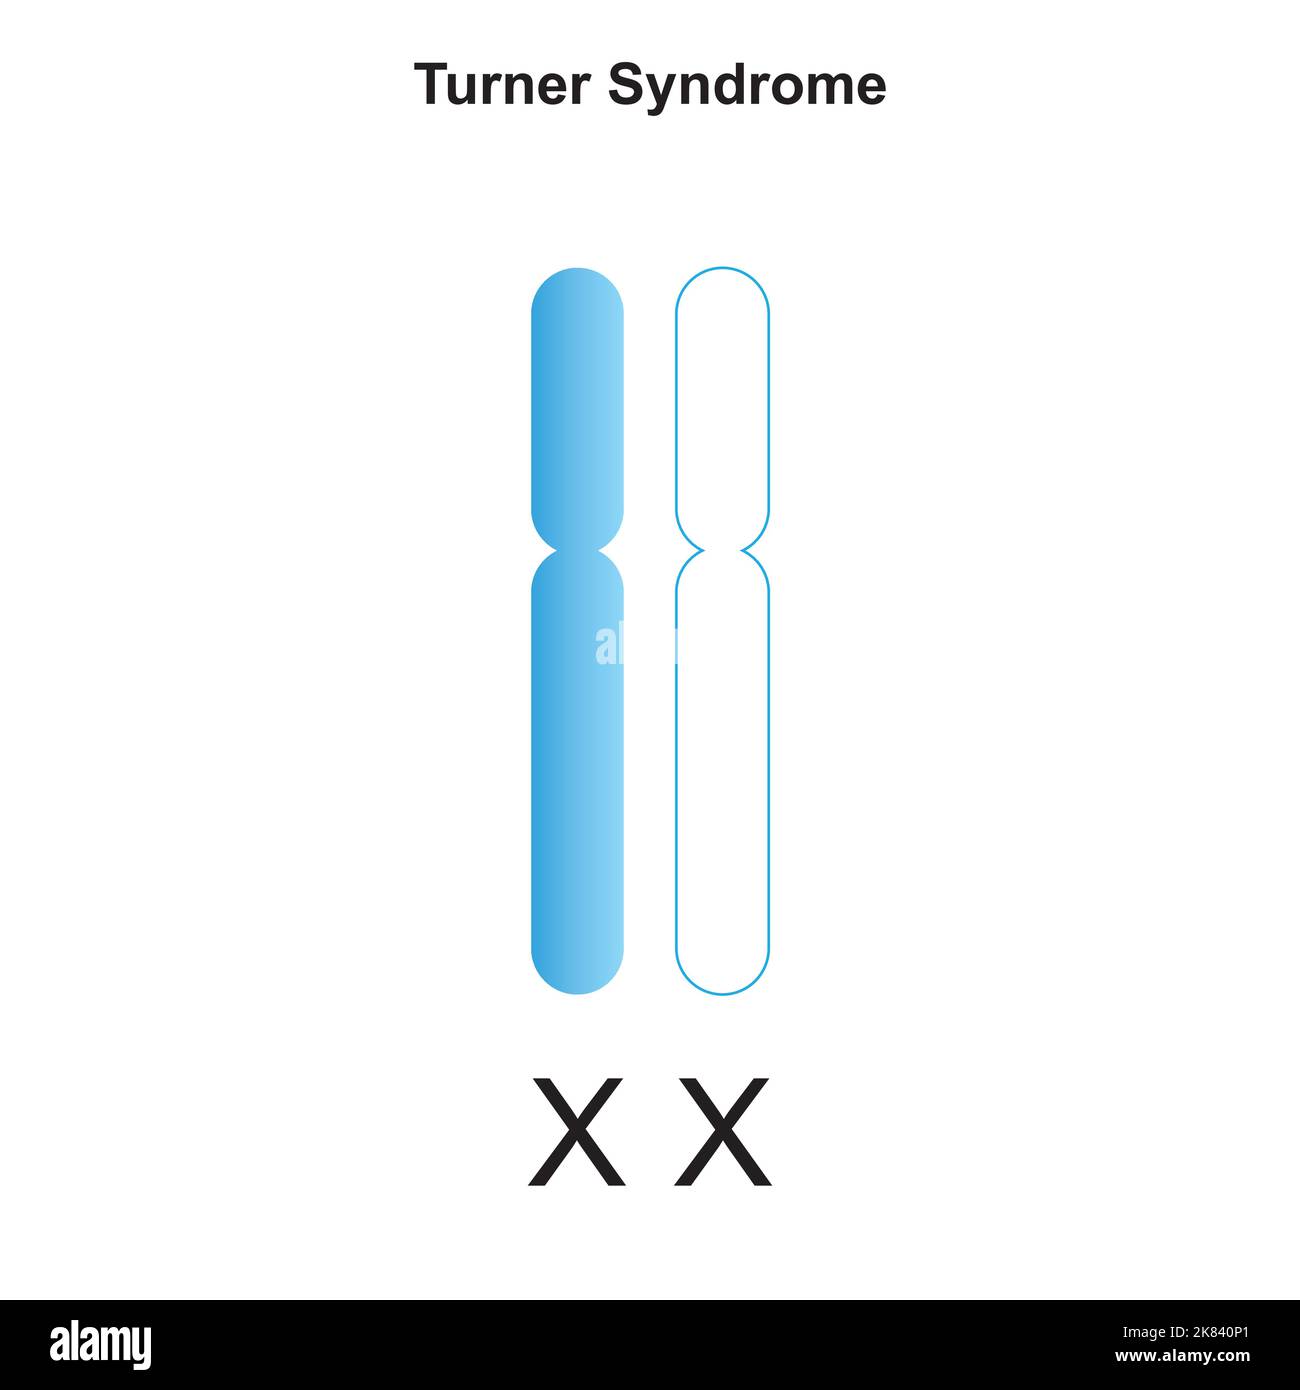 Progettazione scientifica della sindrome di Turner (monosomia X). Simboli colorati. Illustrazione vettoriale. Illustrazione Vettoriale